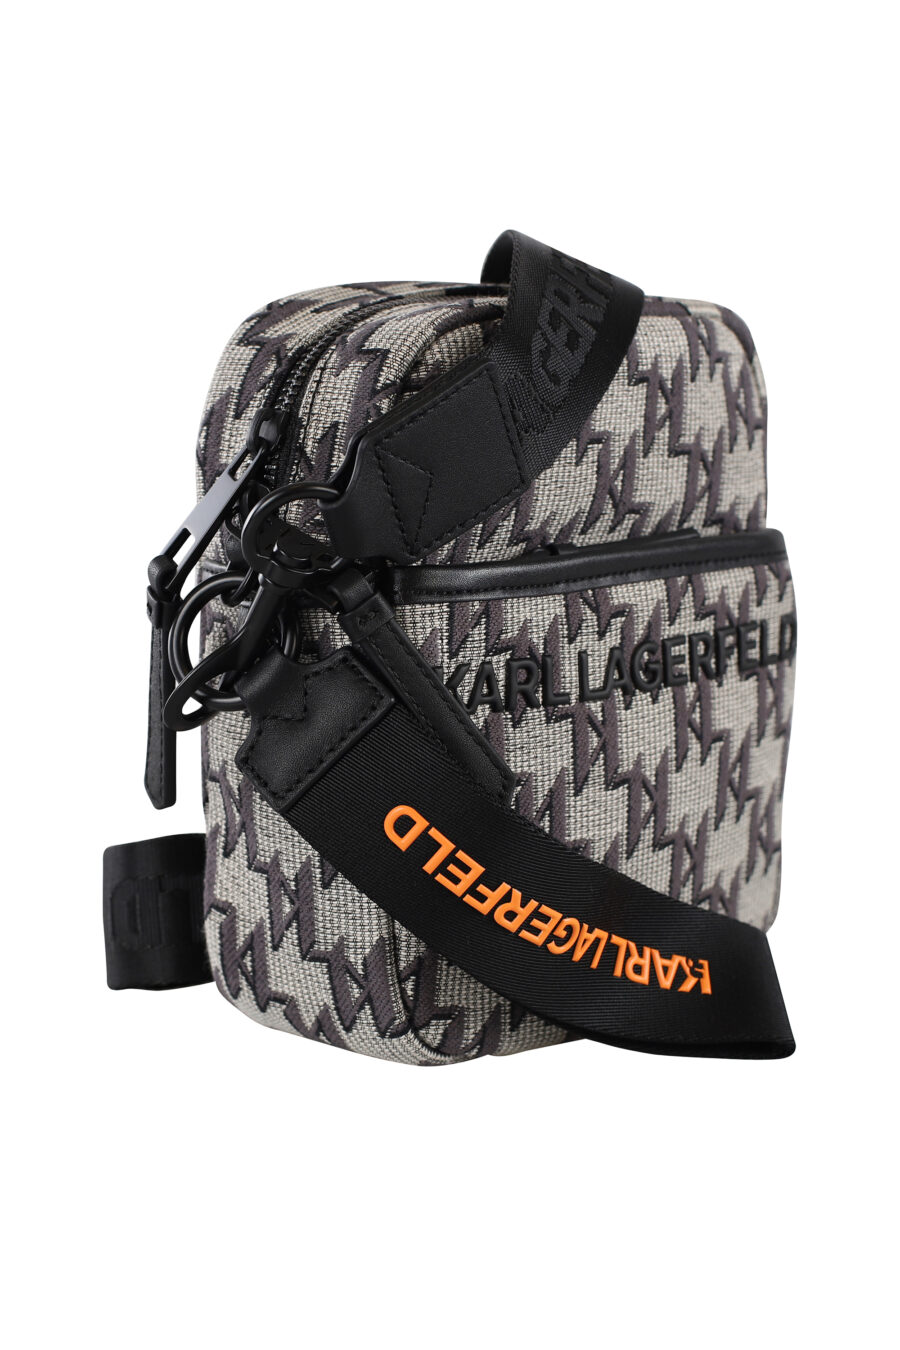 Shoulder bag with monogram logo - IMG 6929